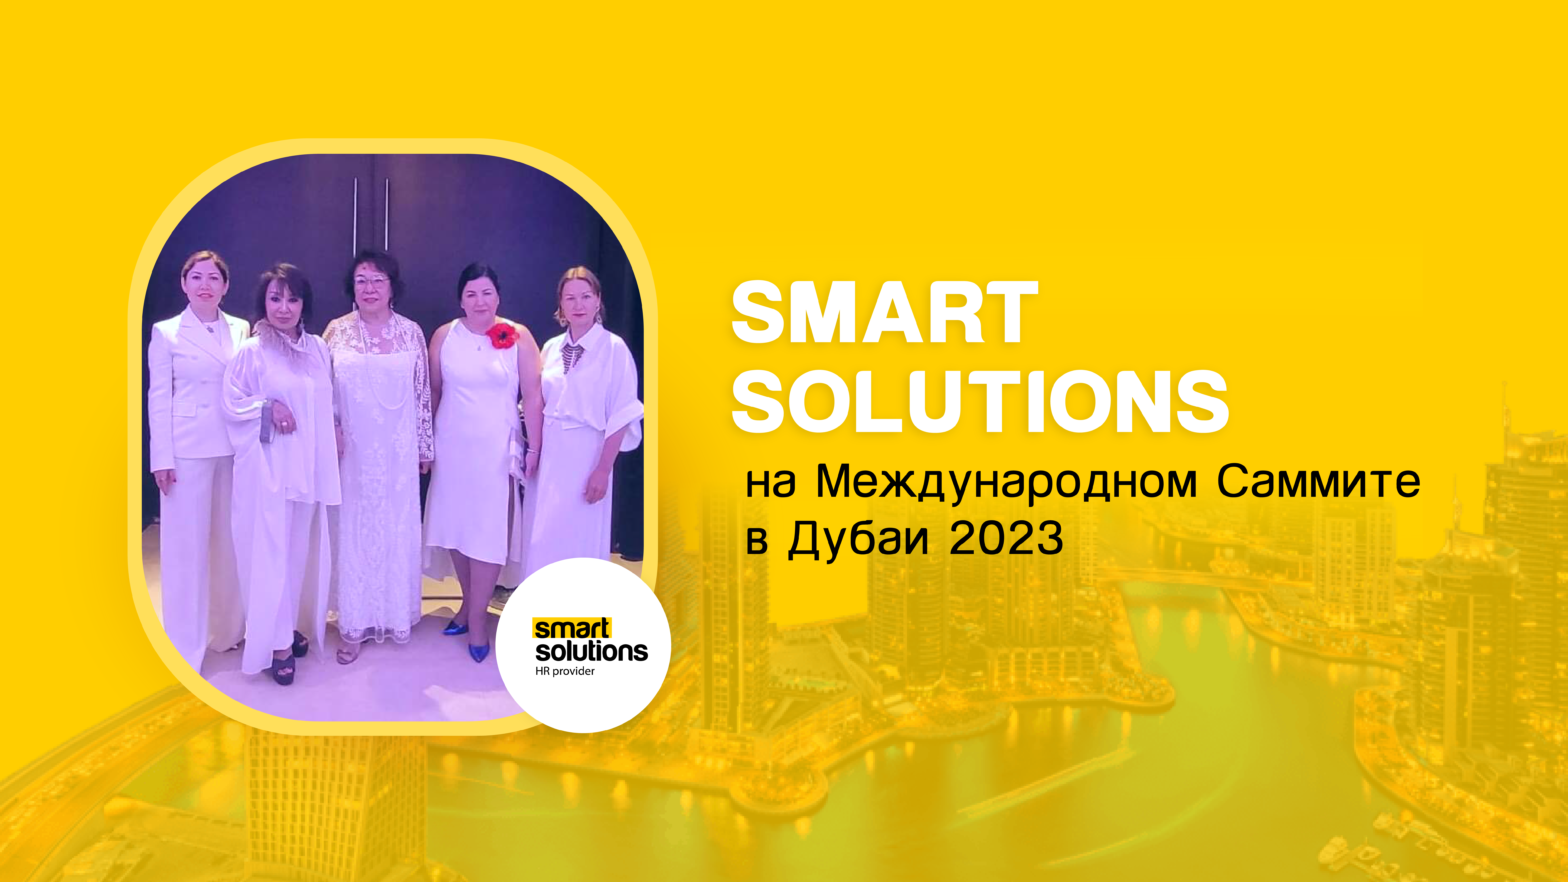 Smart Solutions приняла участие во Всемирном саммите в Дубае 2023